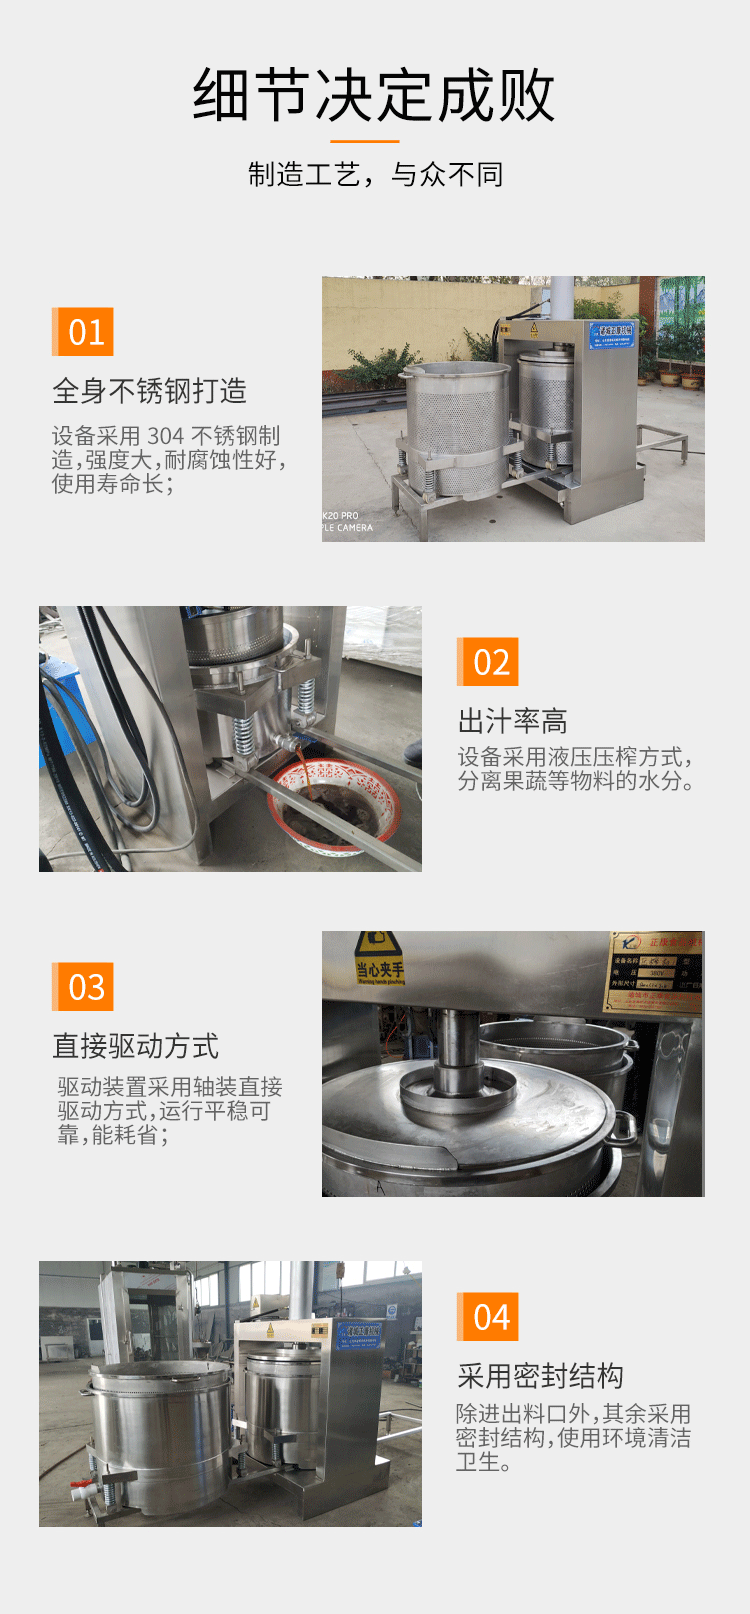 304不锈钢压榨机 液压压榨机 立式双桶压榨机 葡萄榨汁机 正康机械现货供应示例图12